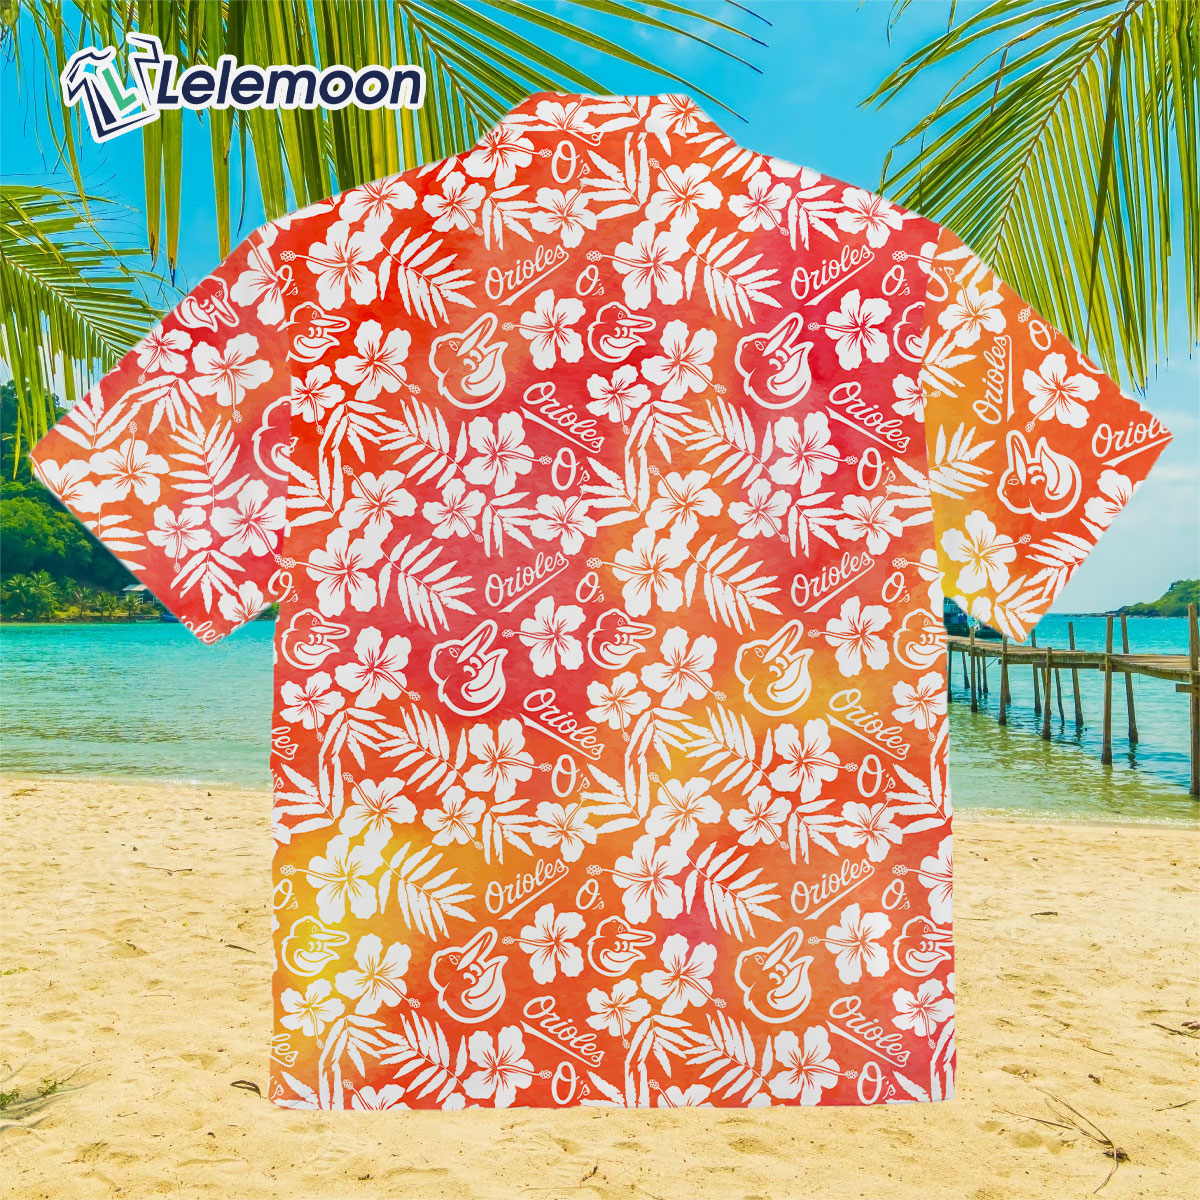 hawaiian shirt day orioles